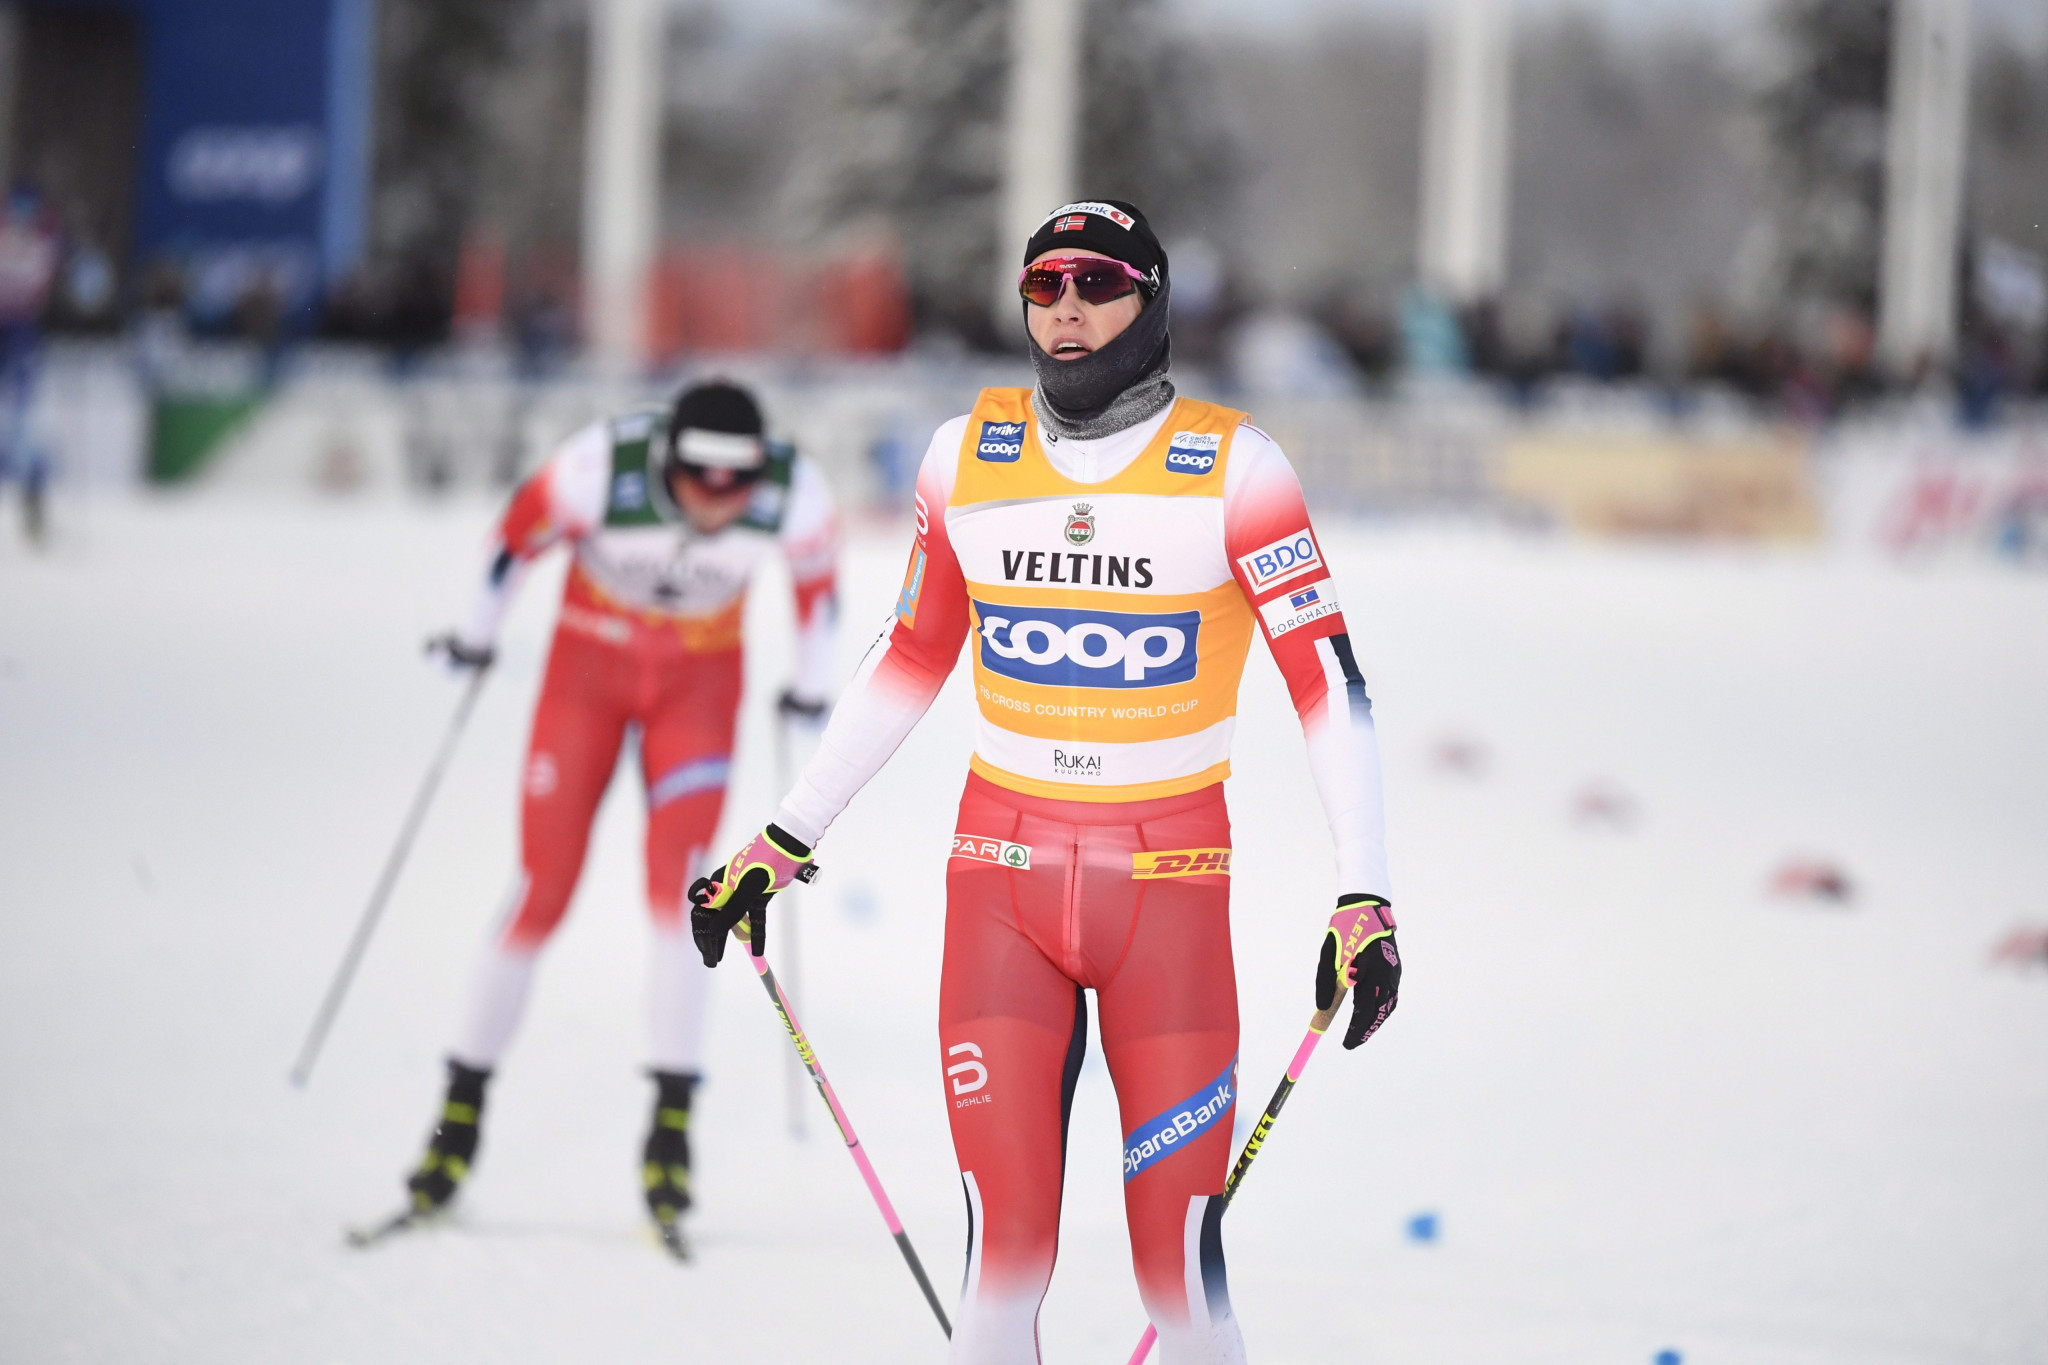 Norway's Johannes Høsflot Klæbo triumphed in the men's 15km pursuit event ©Getty Images